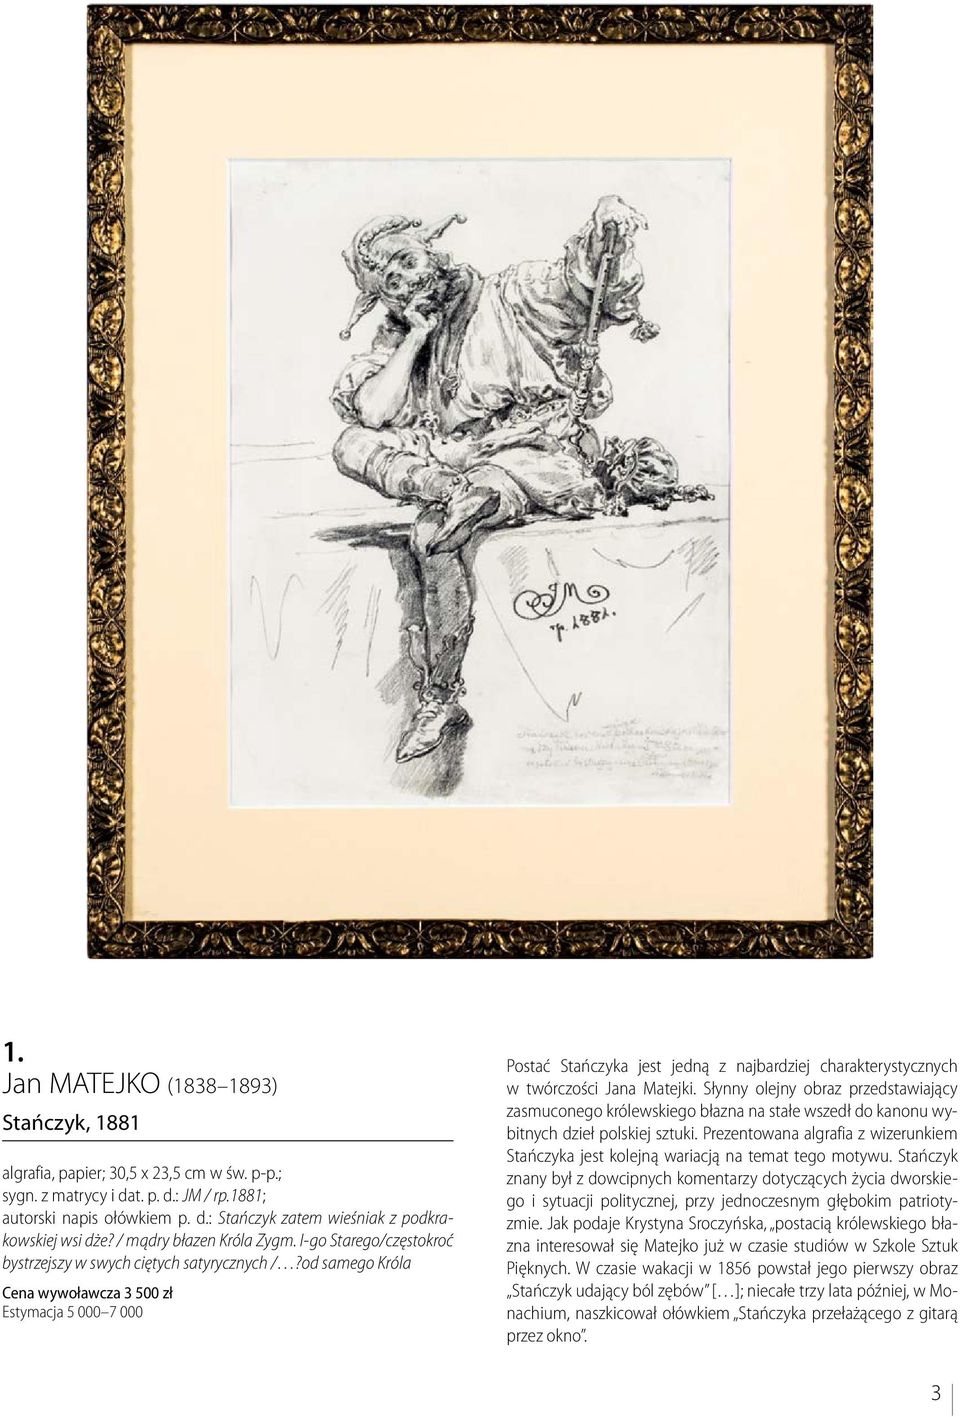 od samego Króla Cena wywoławcza 3 500 zł Estymacja 5 000 7 000 Postać Stańczyka jest jedną z najbardziej charakterystycznych w twórczości Jana Matejki.